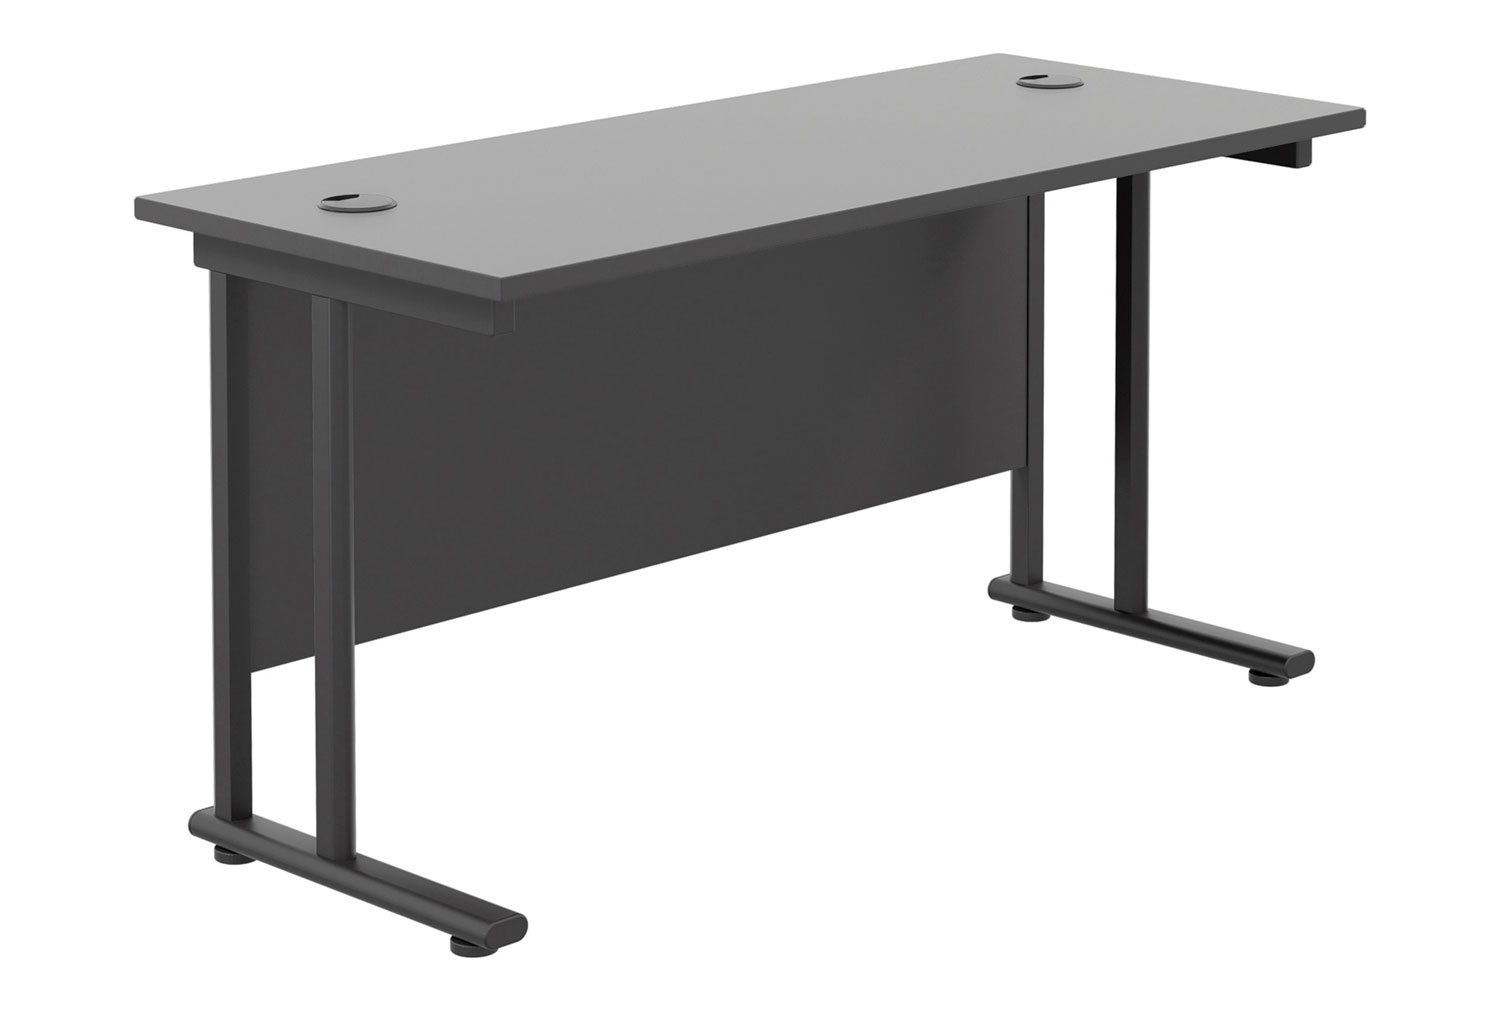 All Black Double C-Leg Narrow Rectangular Office Desk, 120w60dx73h (cm), Fully Installed